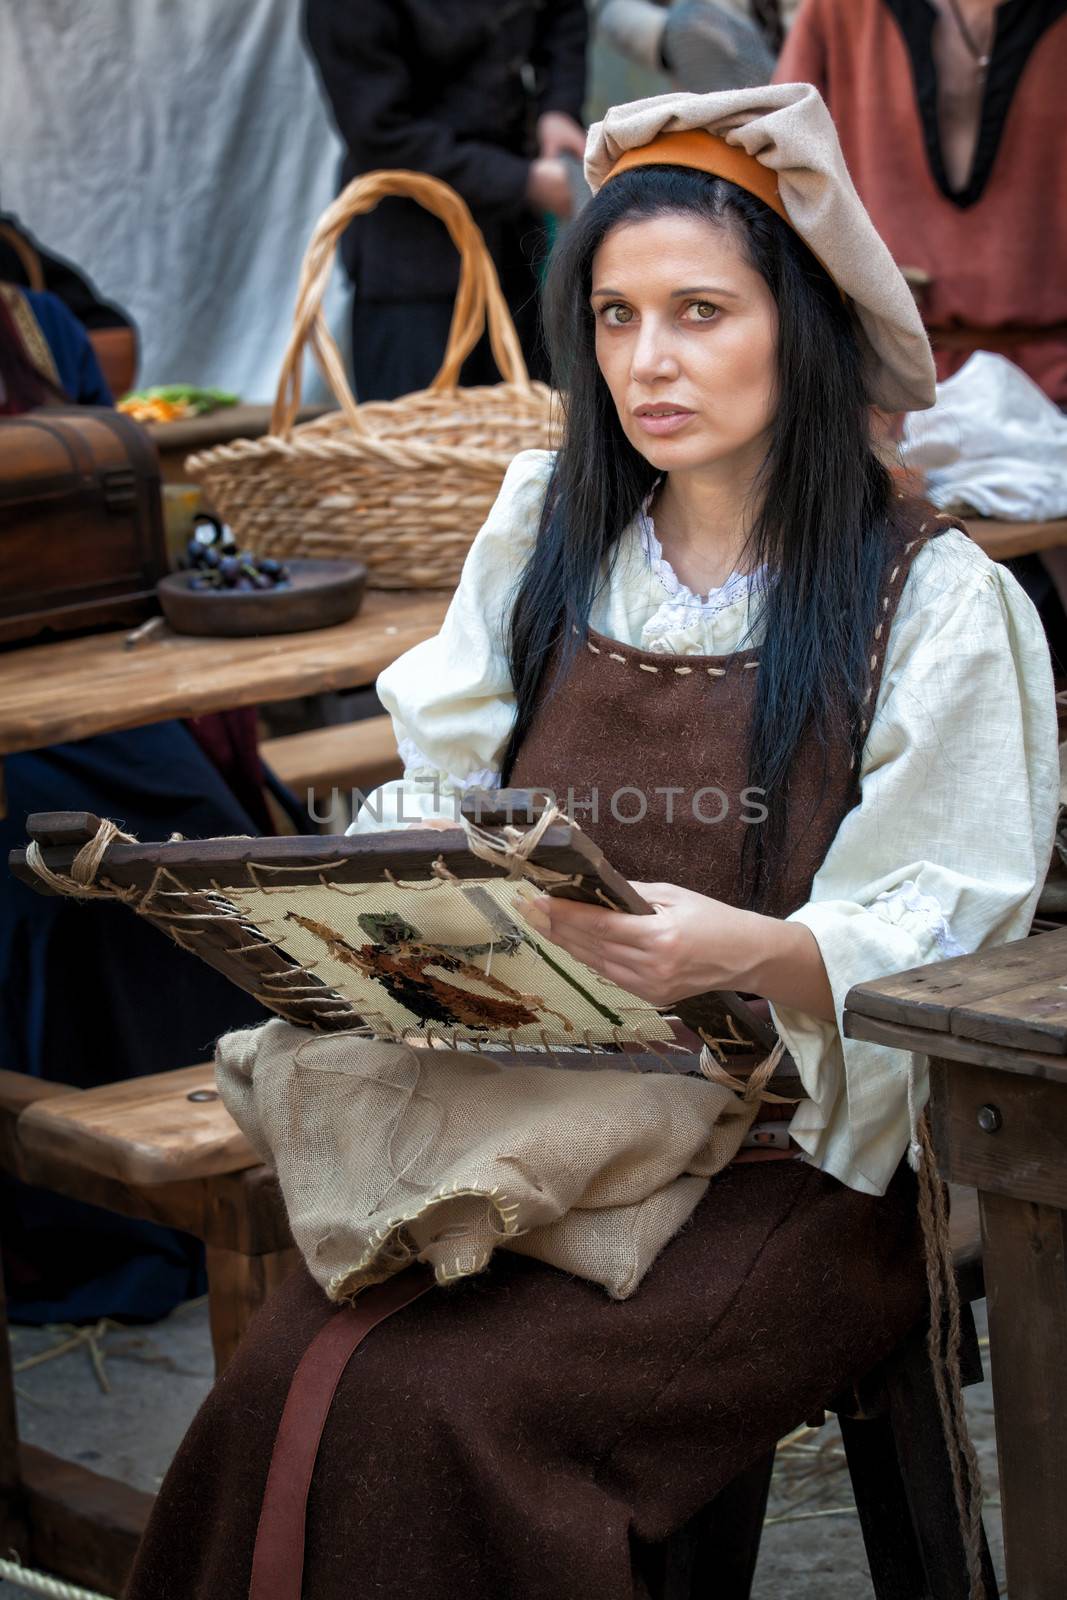 MDINA, MALTA - APR 13 - People in medieval costume taking part in the Medieval Mdina festival in Mdina on 13 April 2013